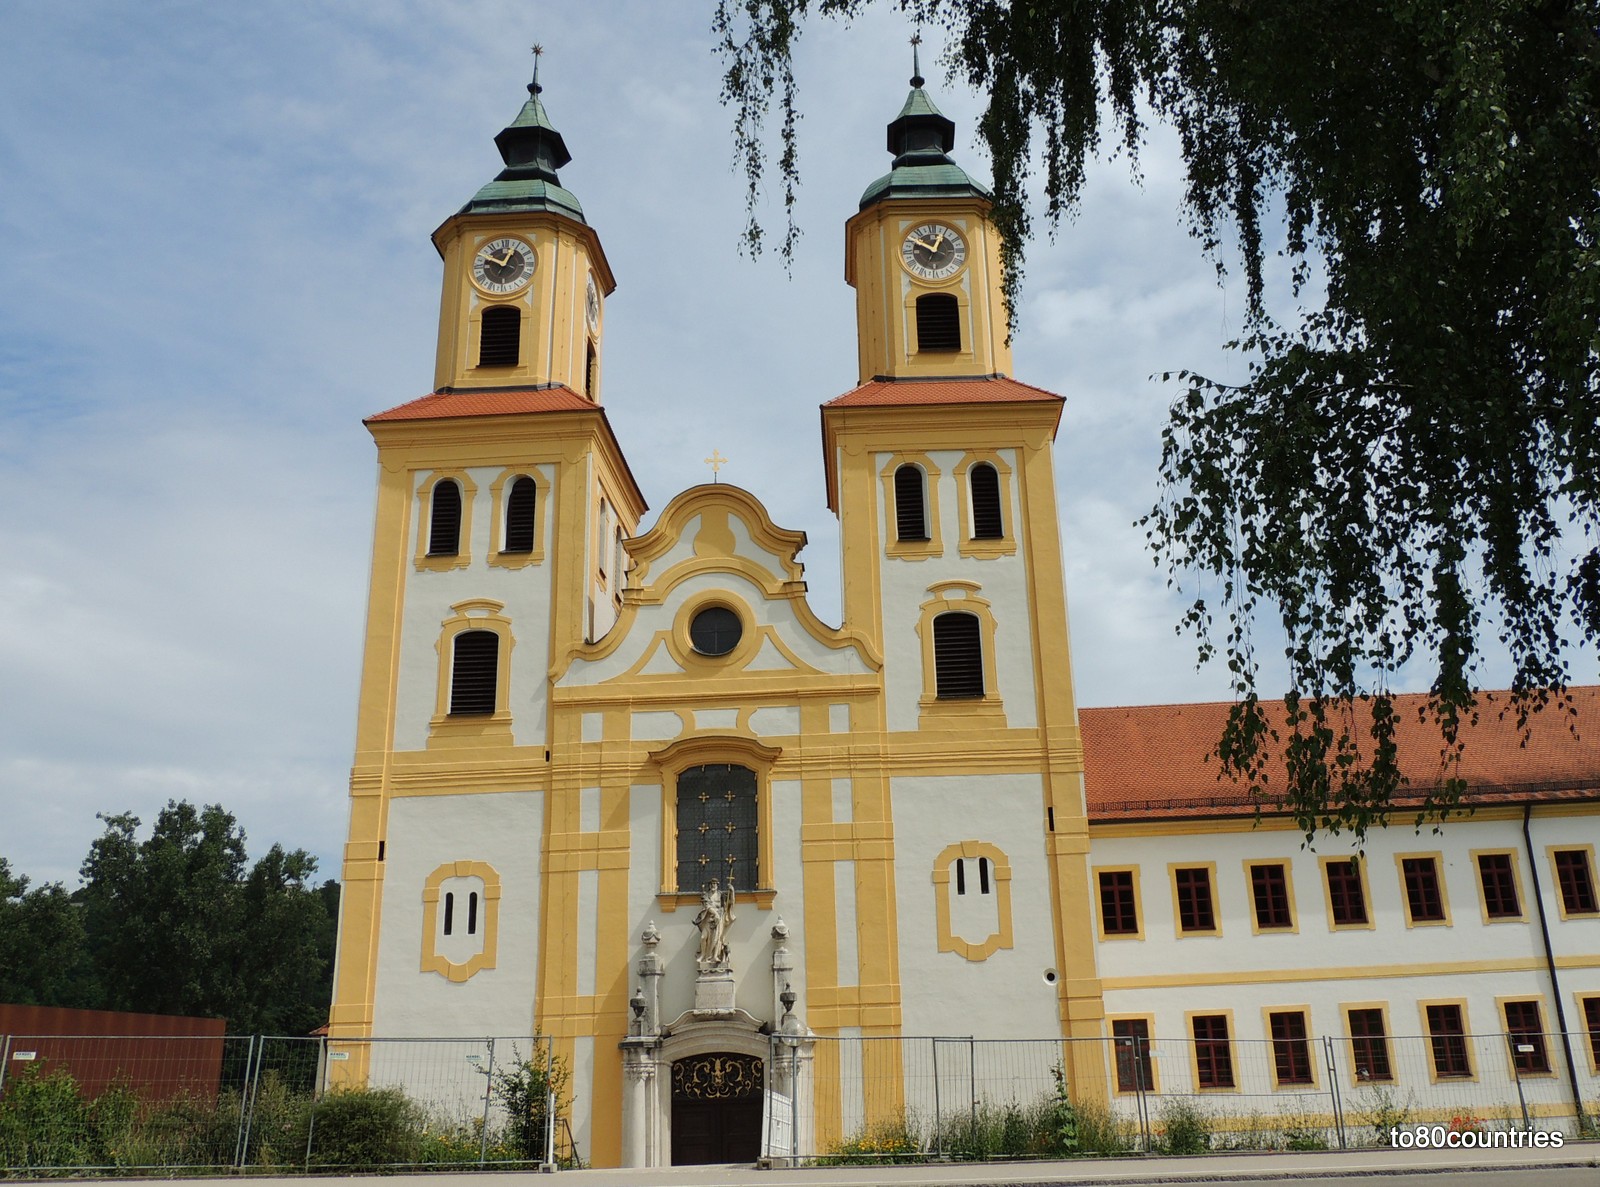 Kloster Rebdorf an der Altmühl